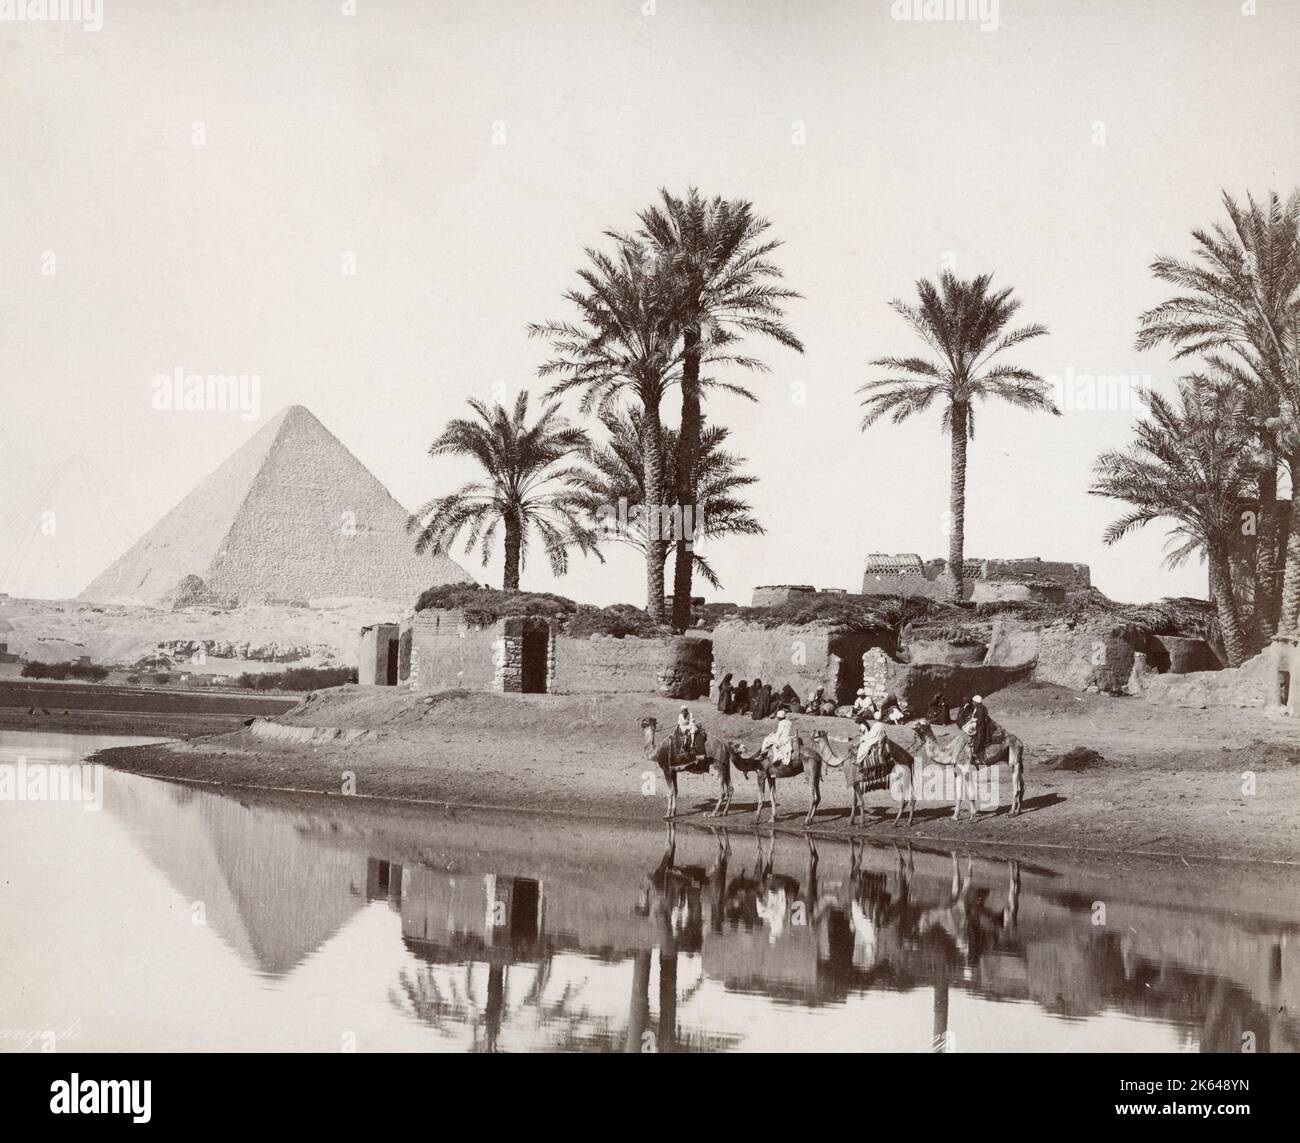 Fotografia d'epoca del XIX secolo - villaggio e cammelli lungo le rive del fiume Nilo, vicino alla Grande Piramide di Giza. Fotografia dello studio Zangaki, del 1890 circa. Foto Stock